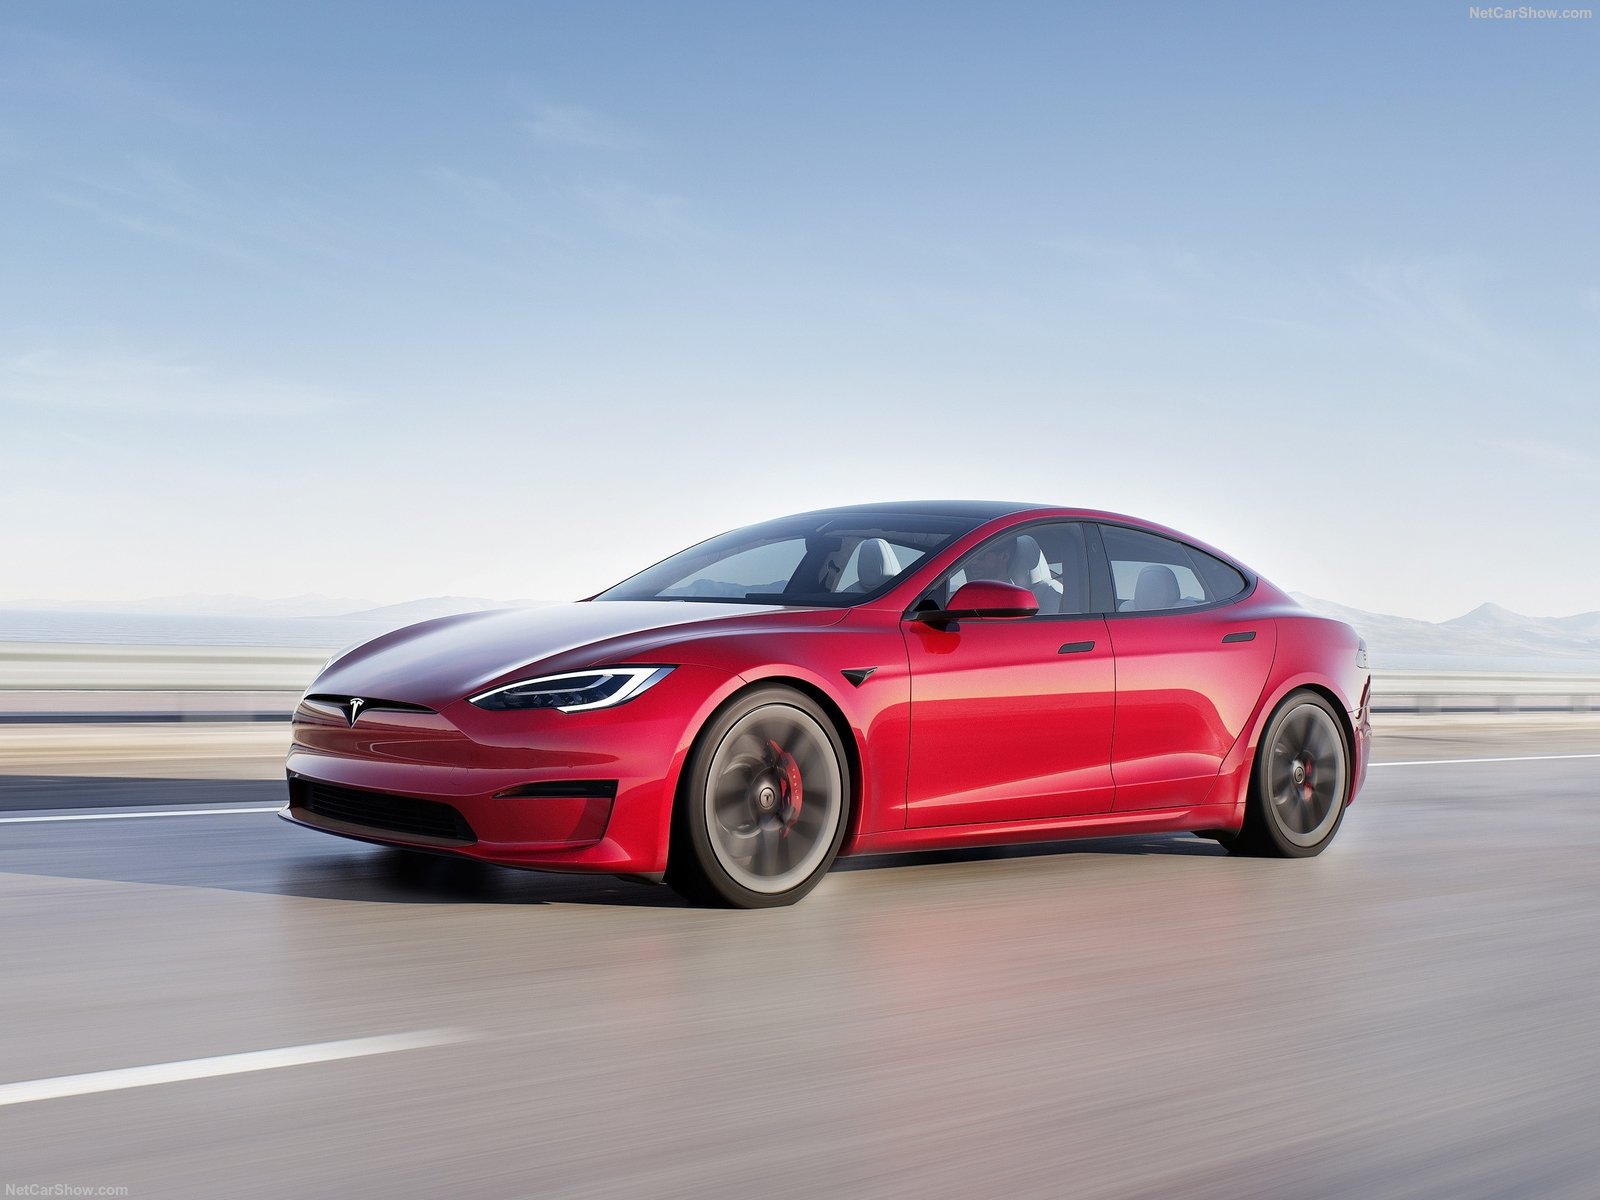 Tesla Model S i sine grommeste utgaver er overlegent omtrent alt ytelses-messig, men er ingen sportsbil av den grunn. Antall hk eller 0-100 tider er irrelevante for hva som definerer en sportsbil.